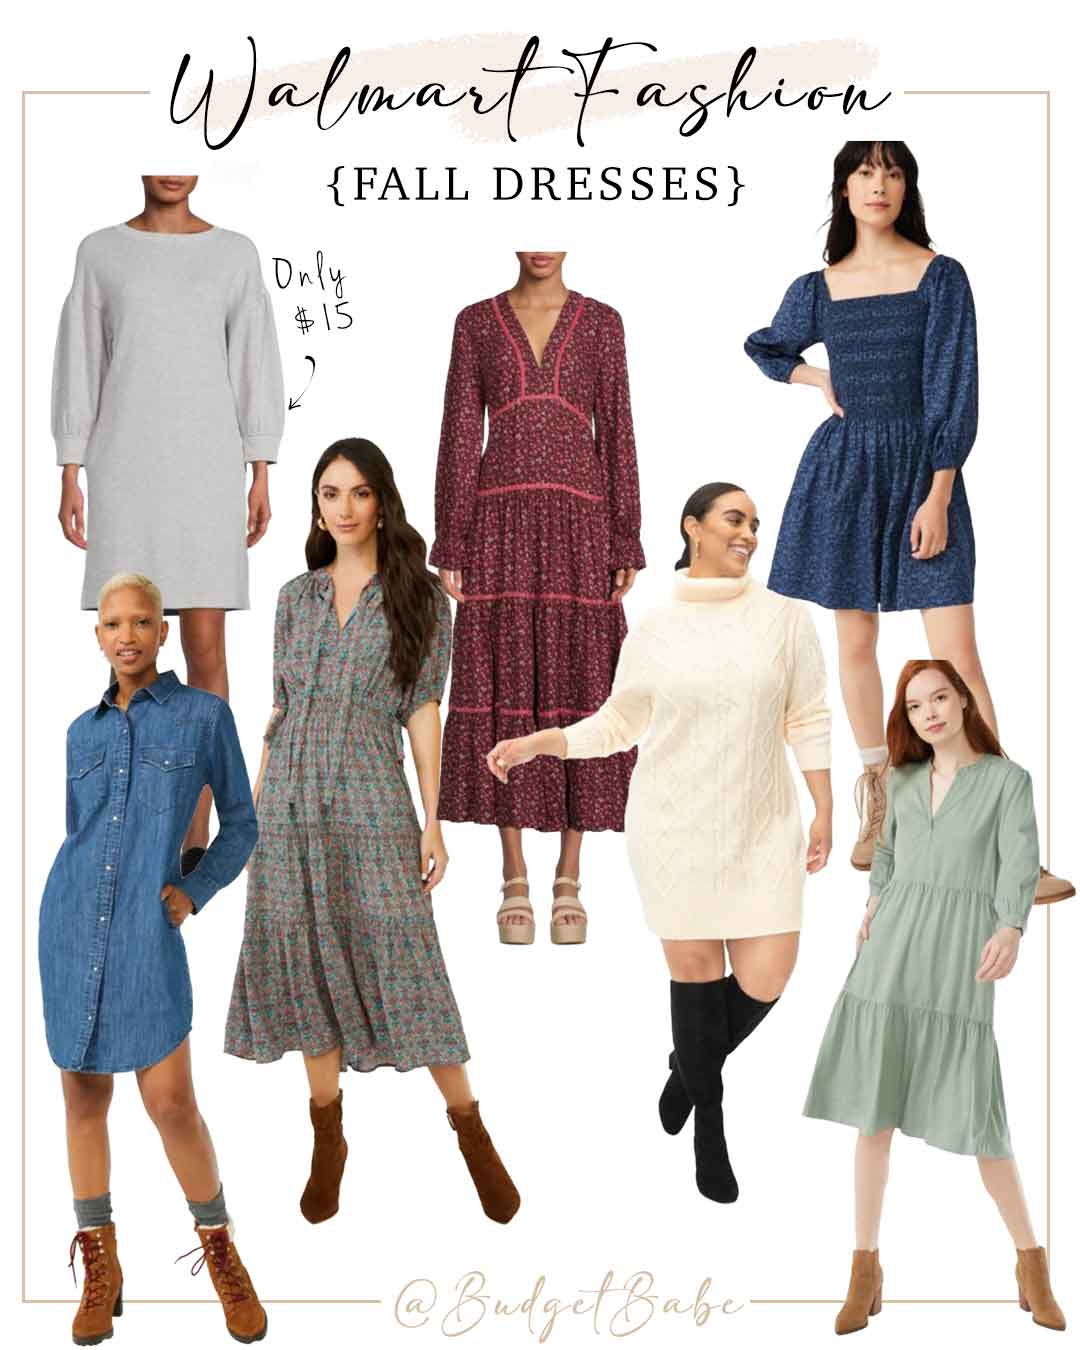 Walmart Fashion Fall Edit | Fall Dresses from $15